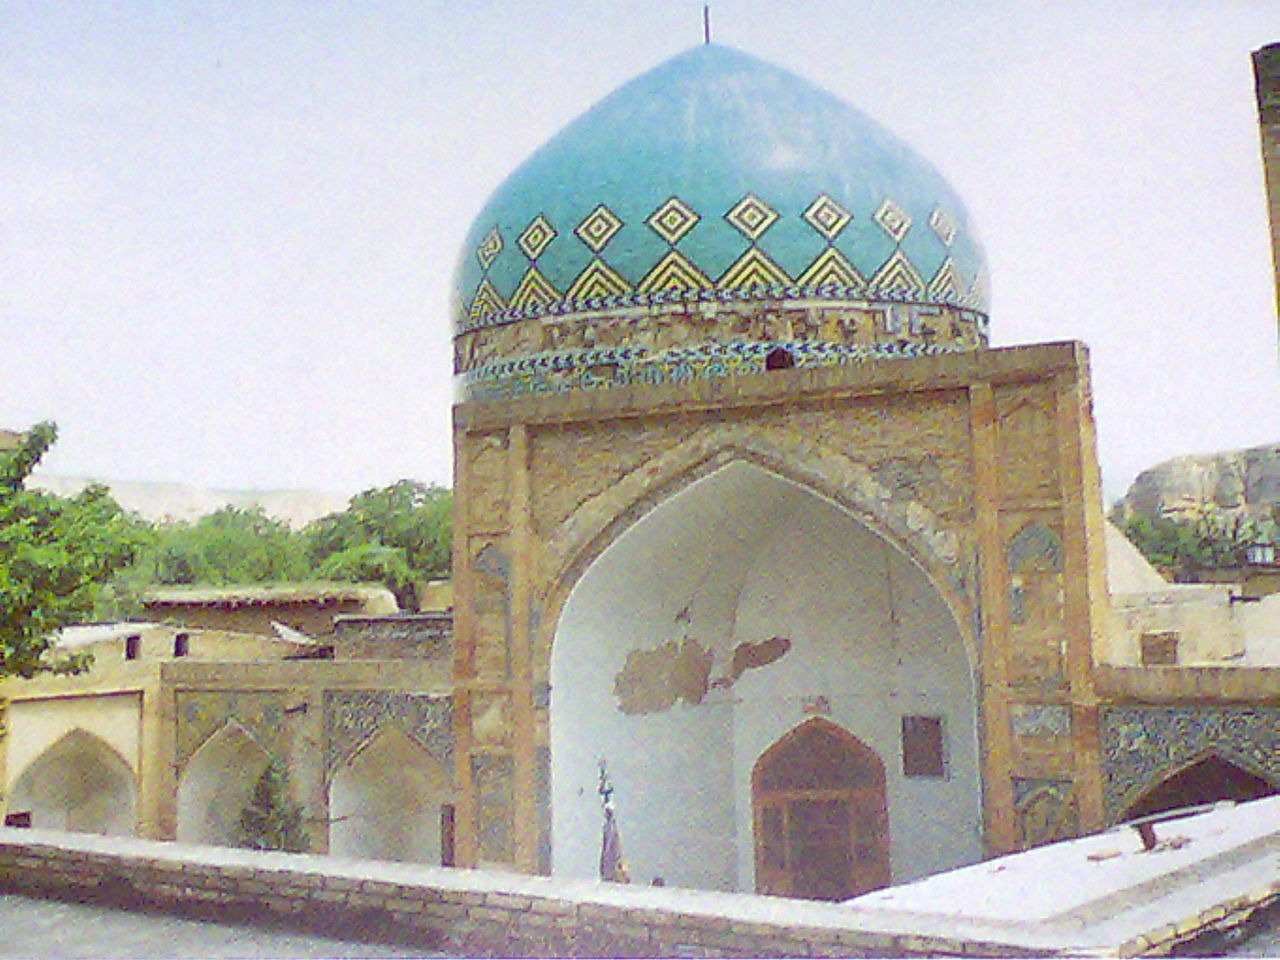 ۹ شهرک کرج با ۵ هزار جمعیت مسجد ندارند/ البرز میزبان یک هزار و ۹ مسجد است